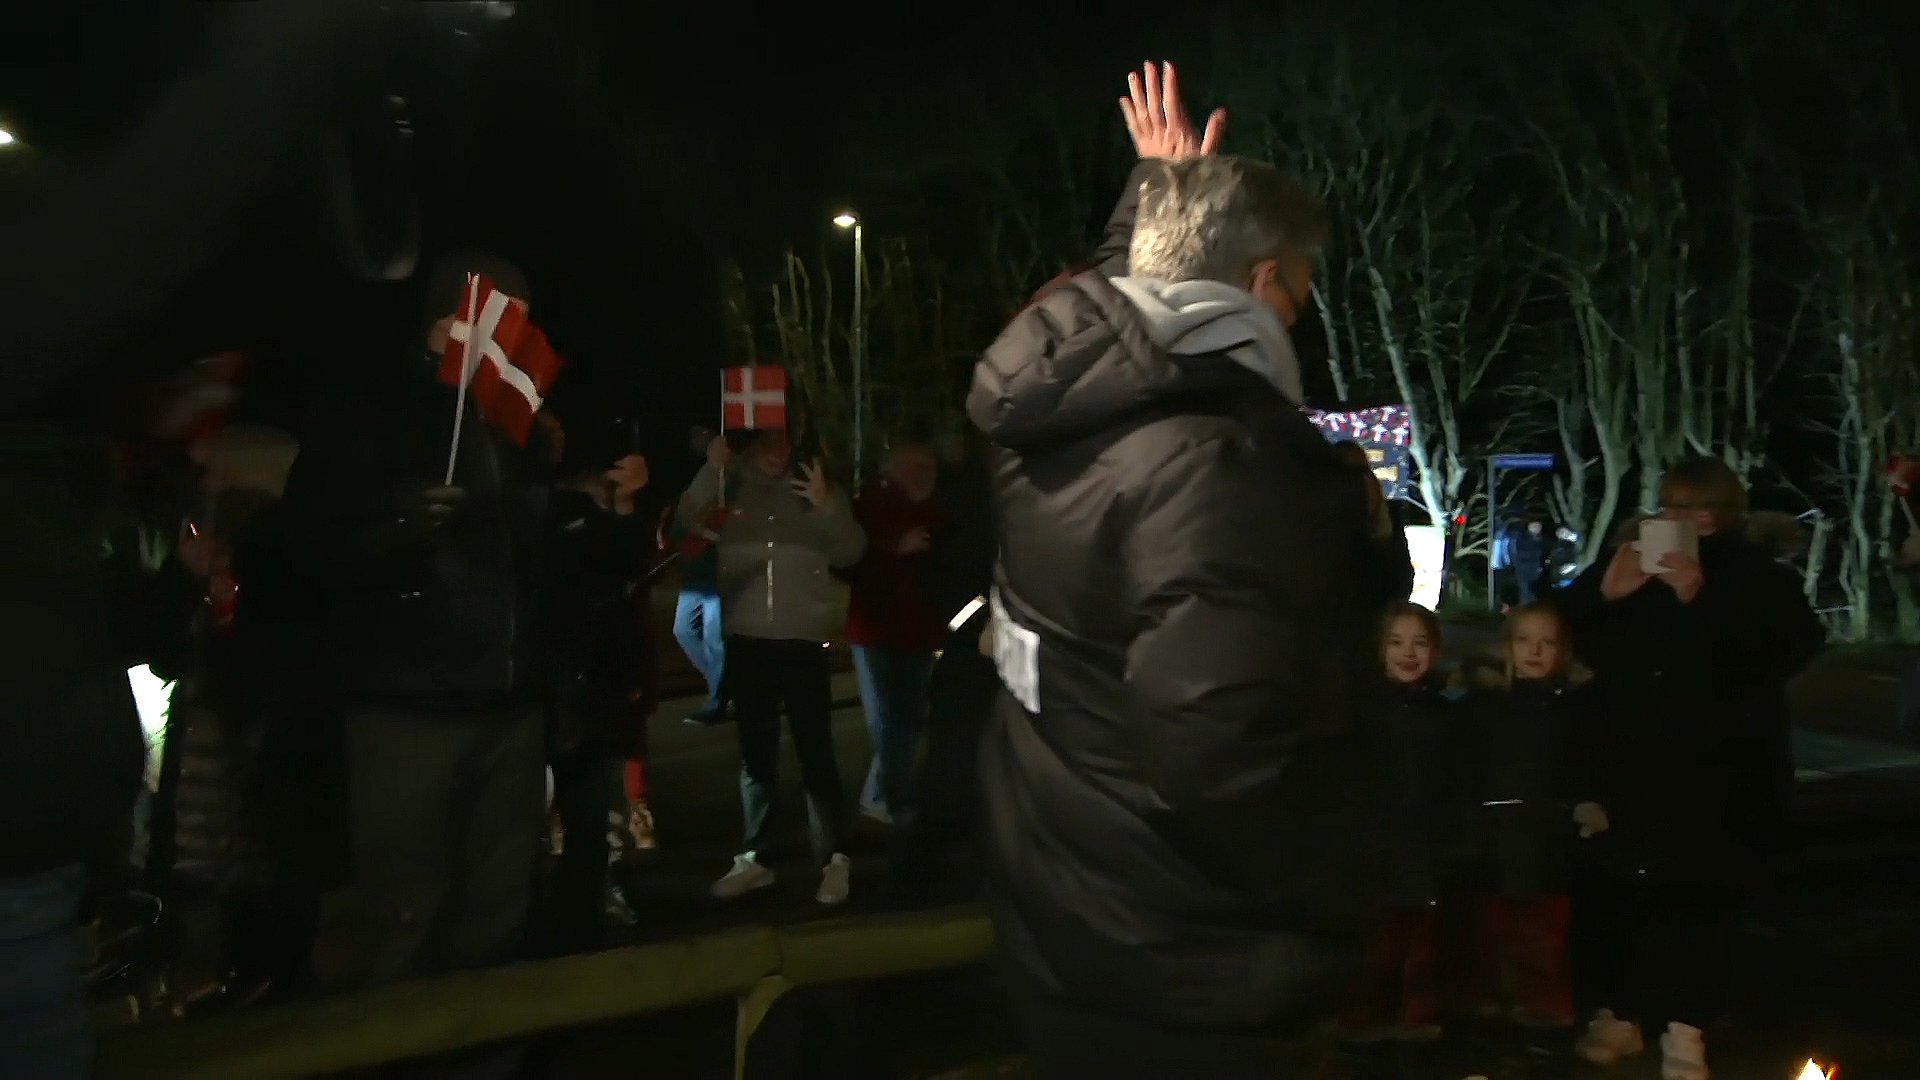 Velkomstfest uventet drejning: Beboere anmeldt til politiet | TV2 Fyn